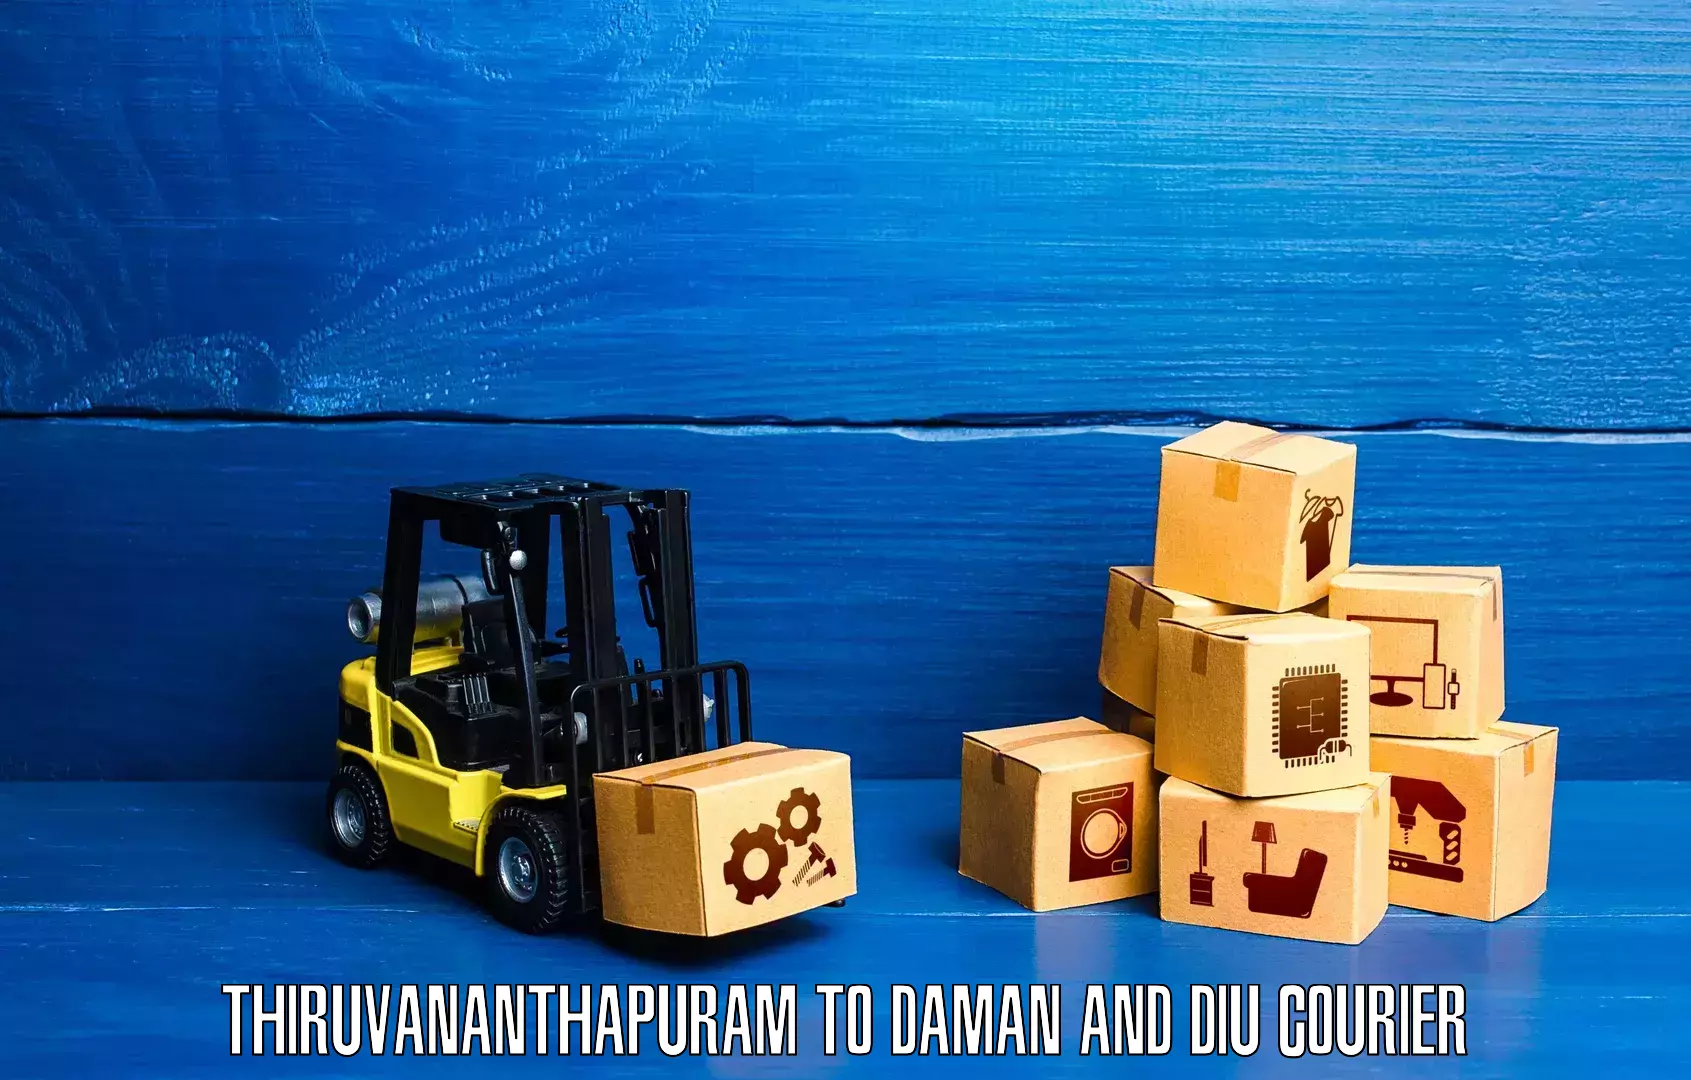 User-friendly delivery service Thiruvananthapuram to Daman